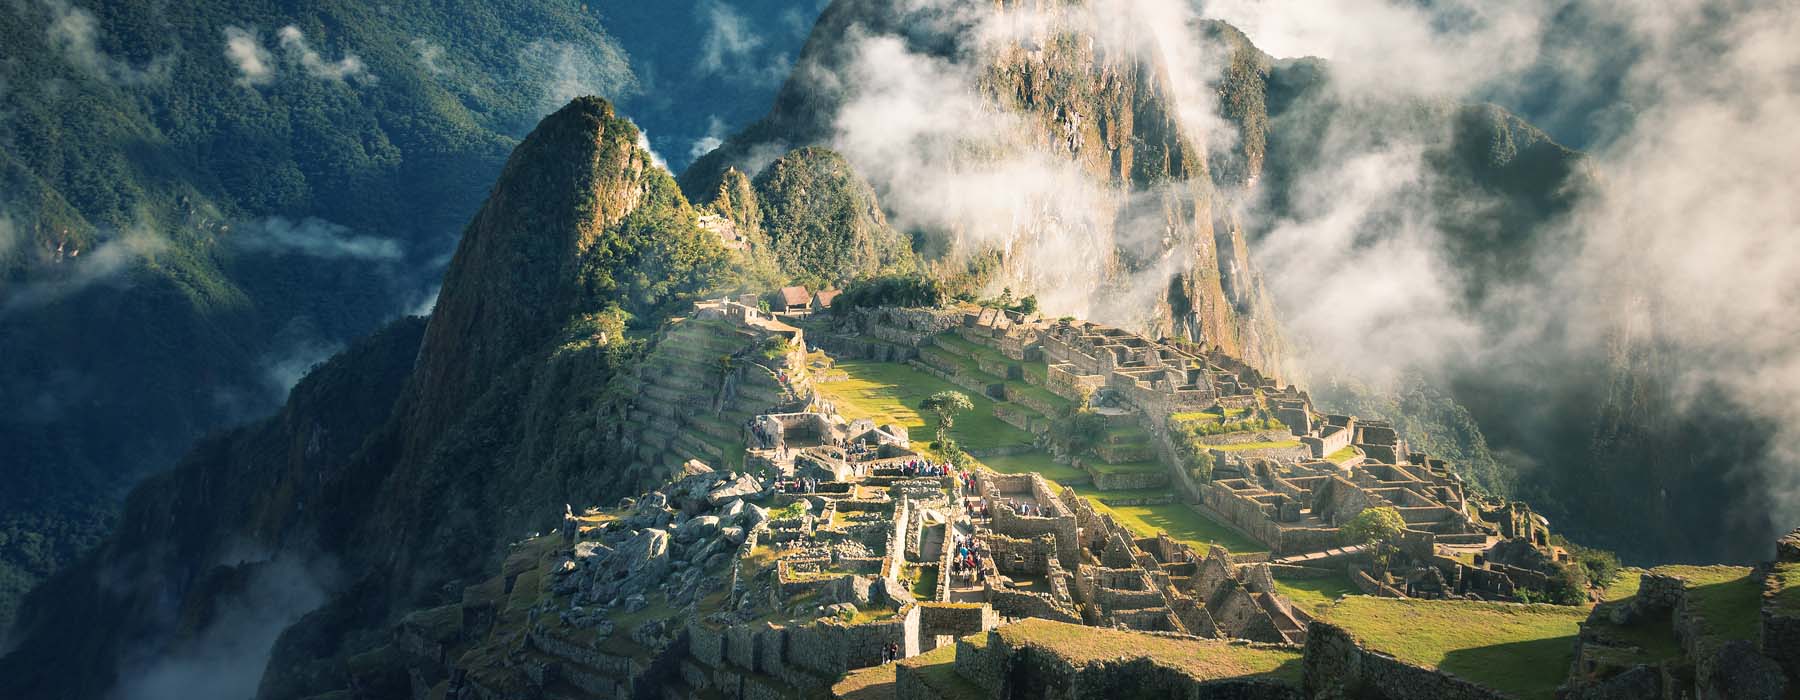 Peru<br class="hidden-md hidden-lg" /> Honeymoons